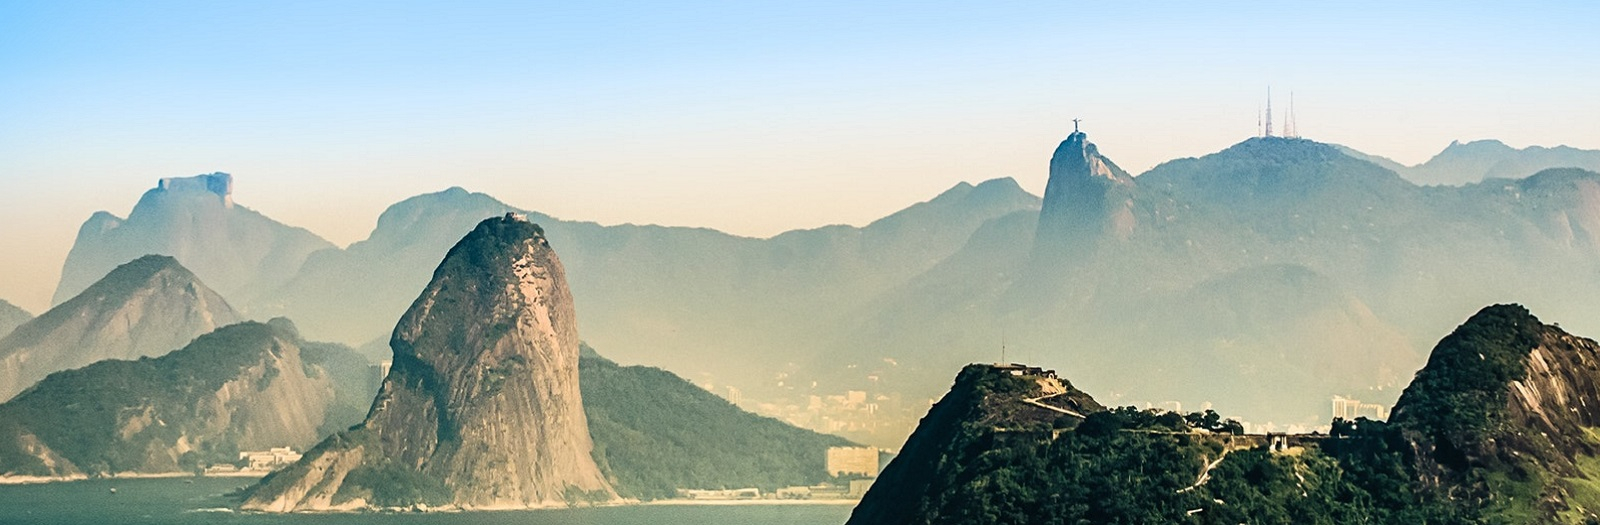 Maak kans op een reis naar Brazilië